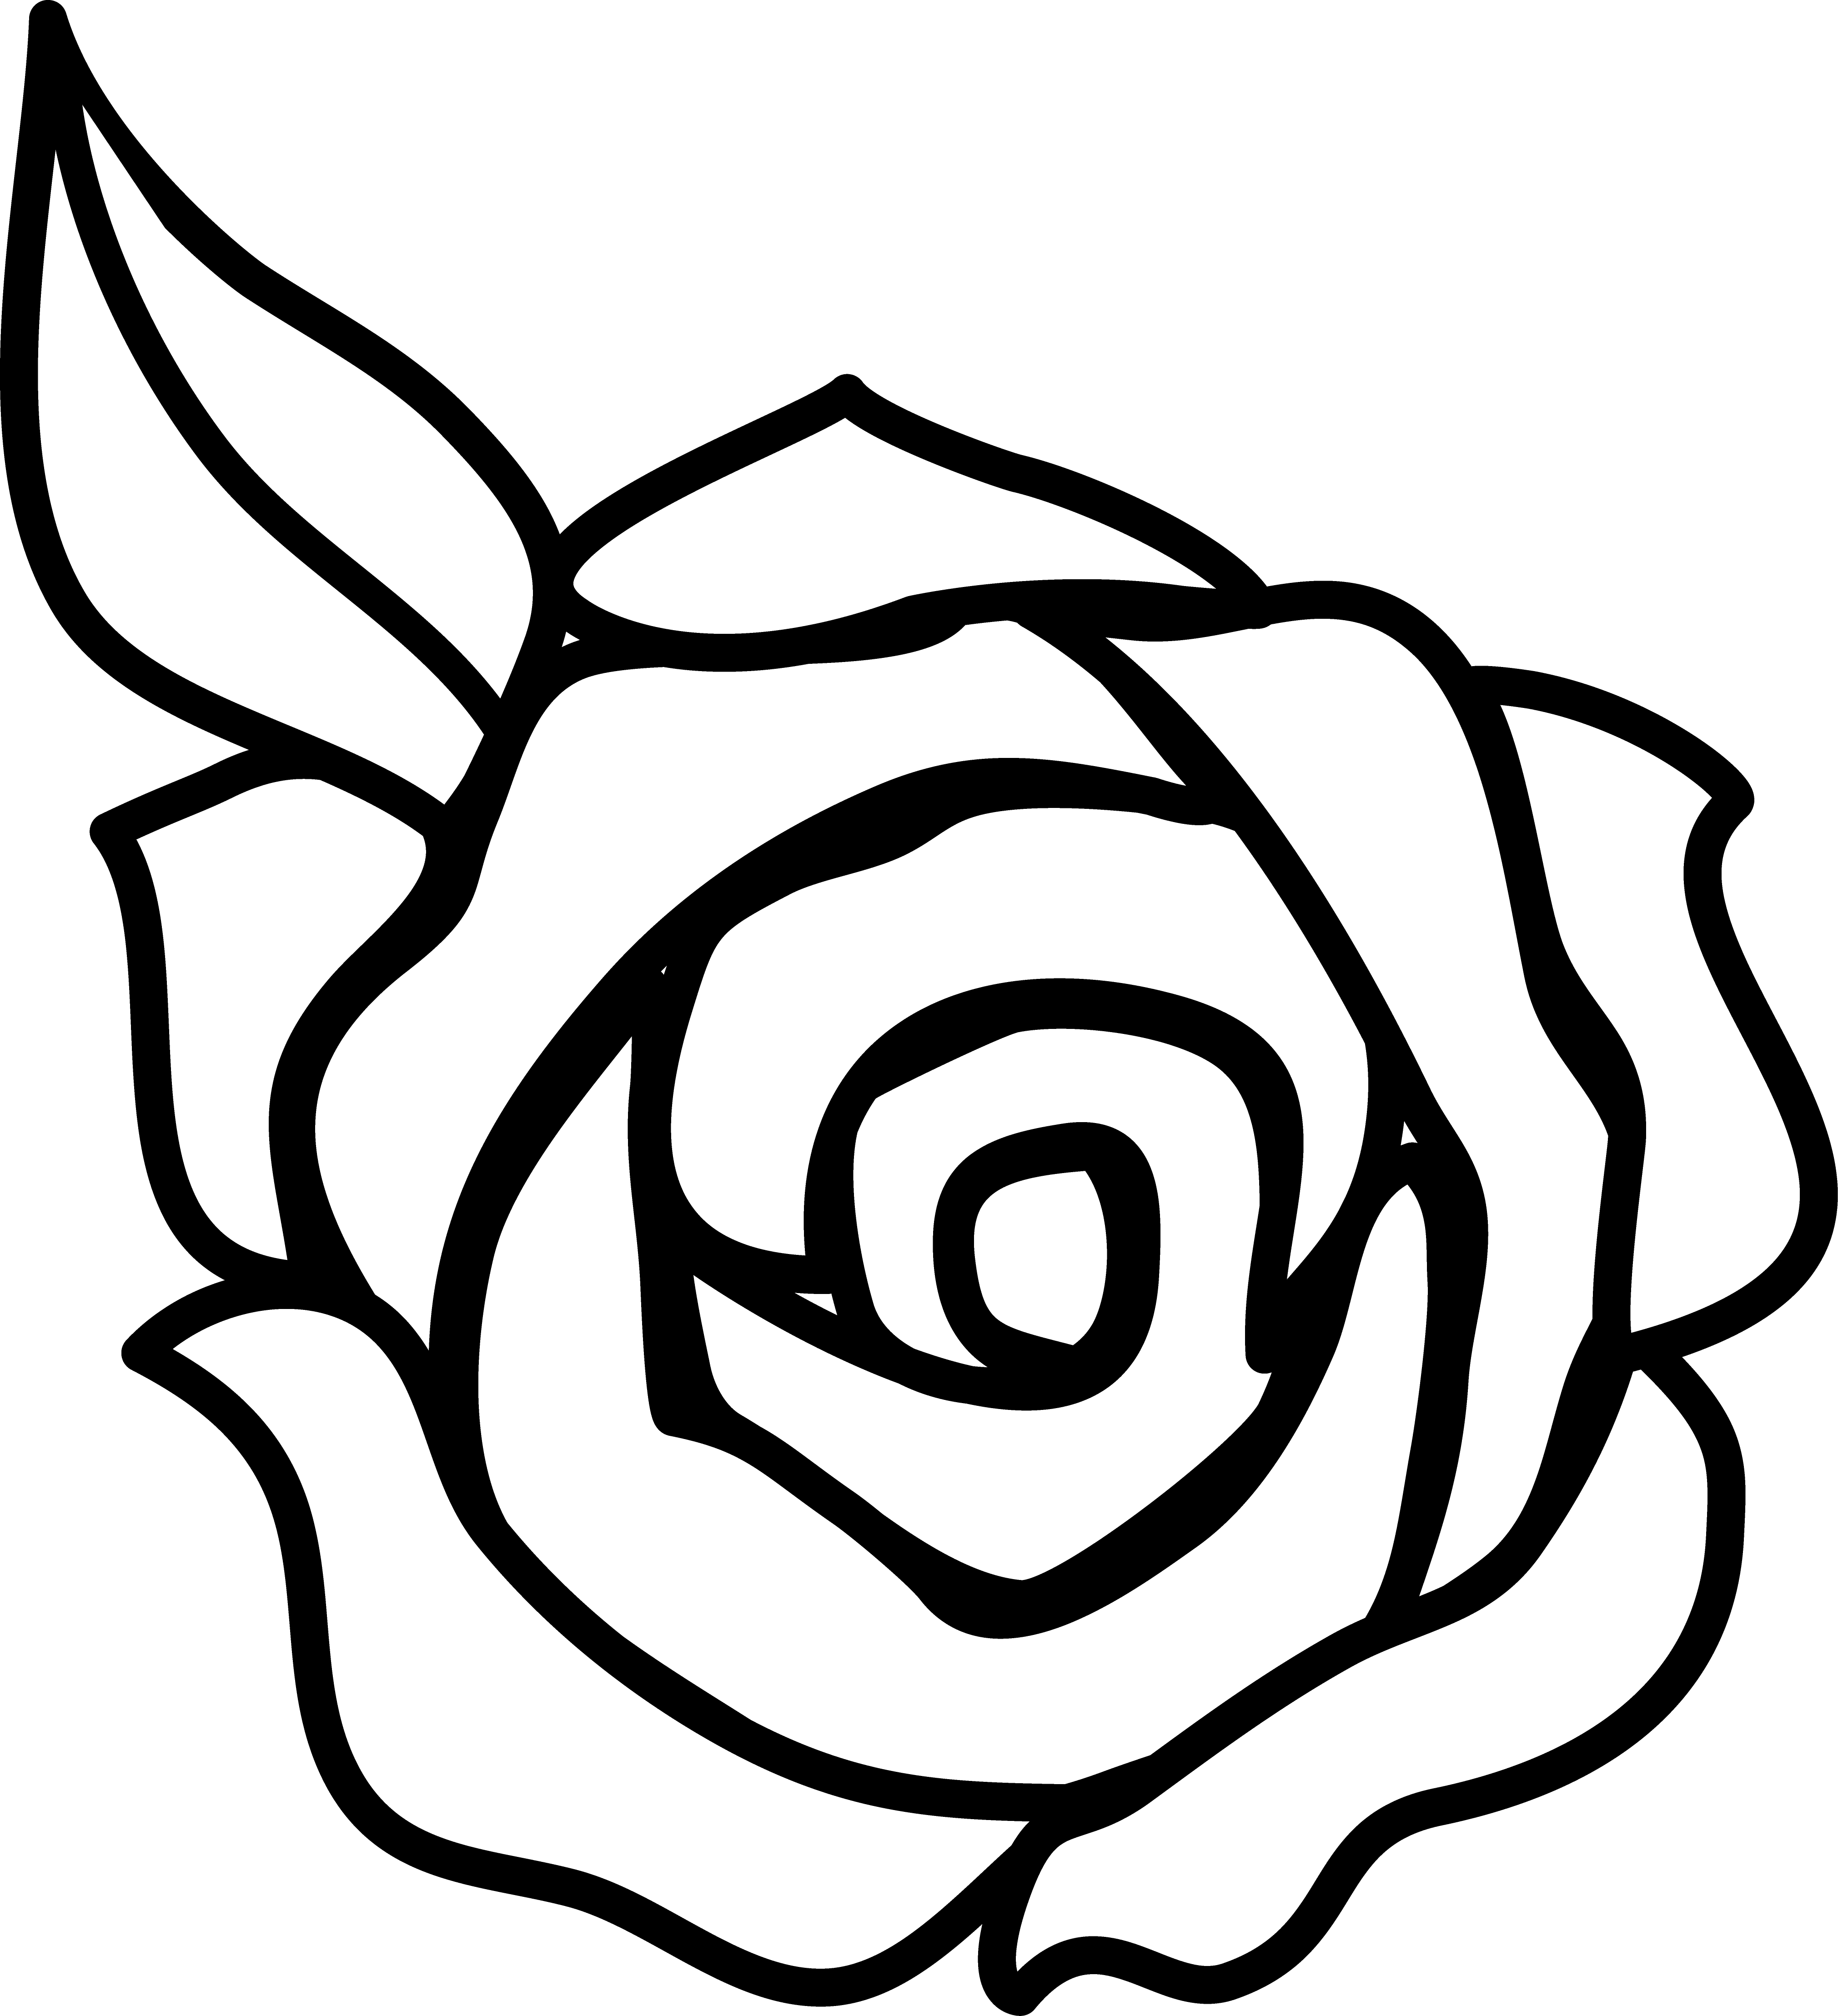 Lime clipart black and white. Rose border clip art